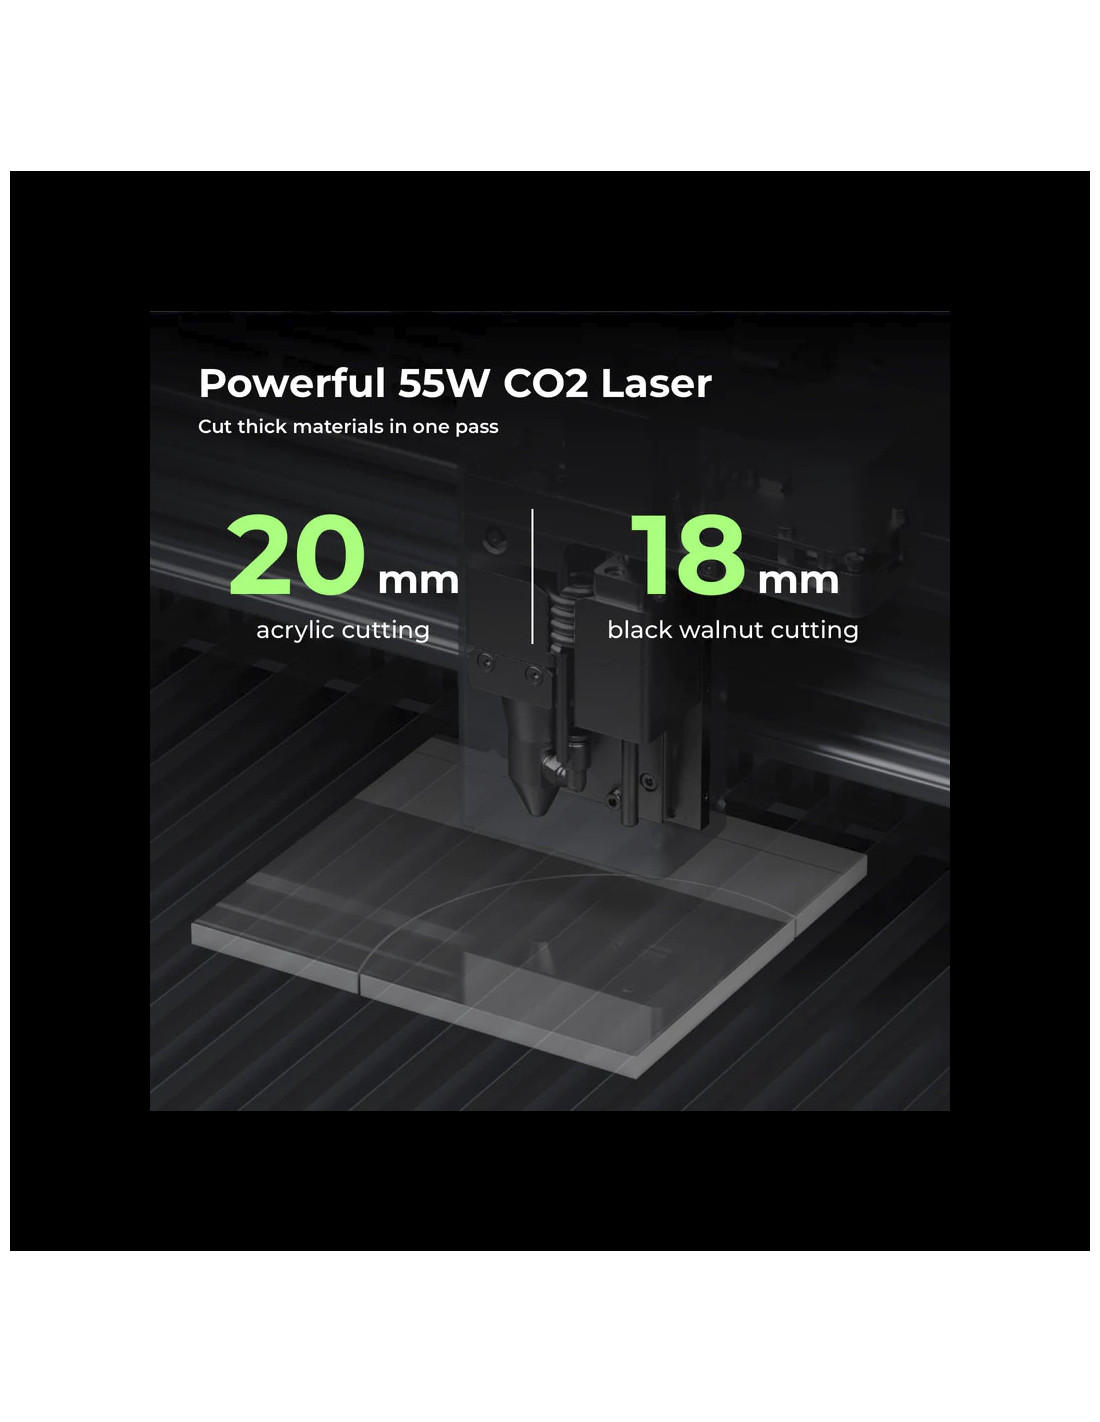 xTool P2 55W - Cortadora láser de escritorio de CO2